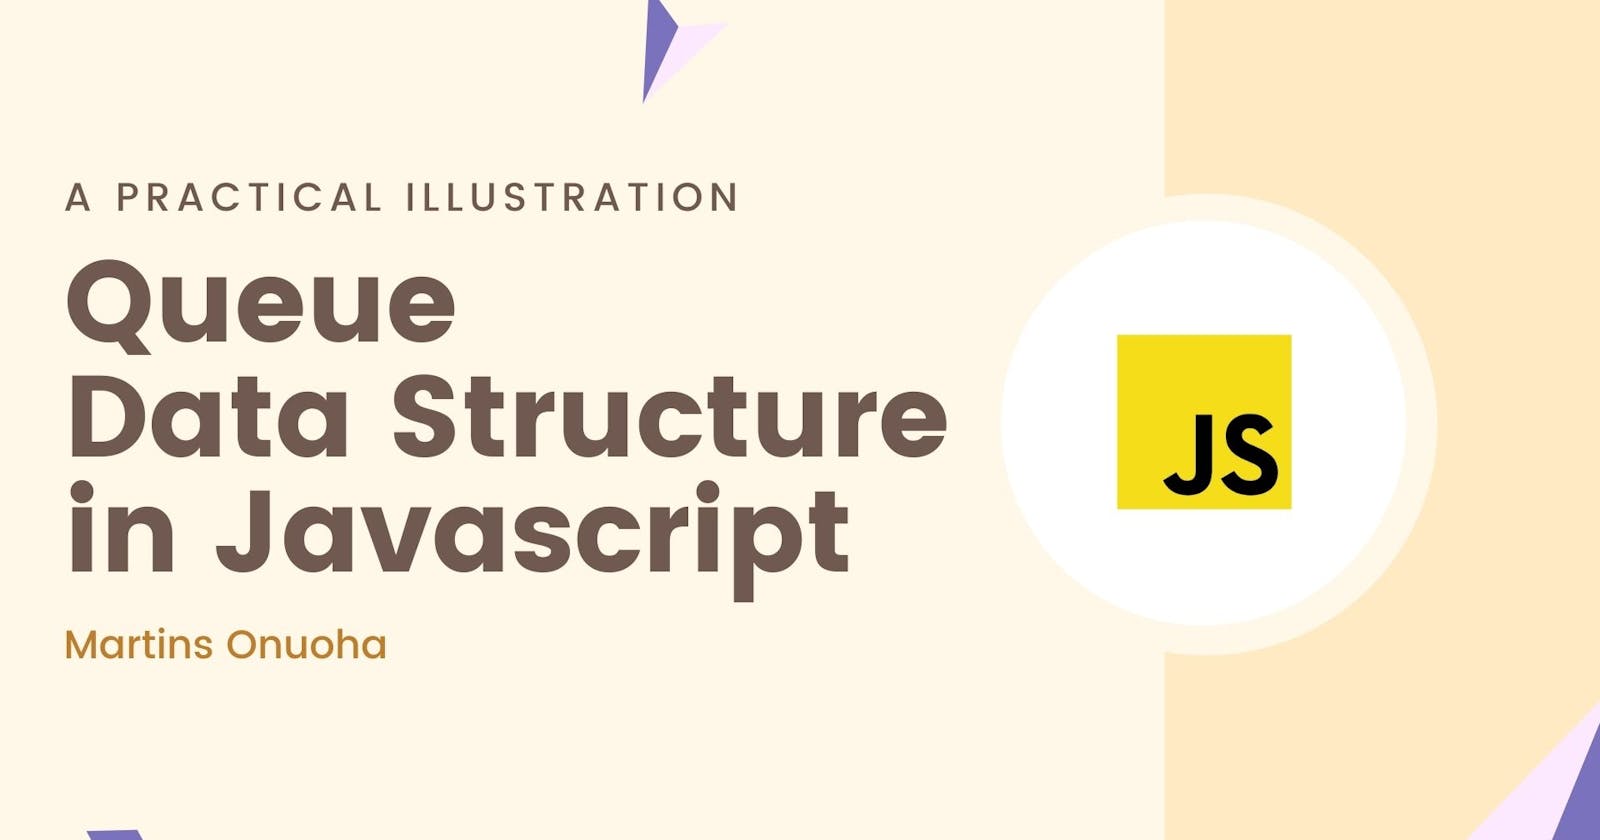 Queue Data Structure in JavaScript